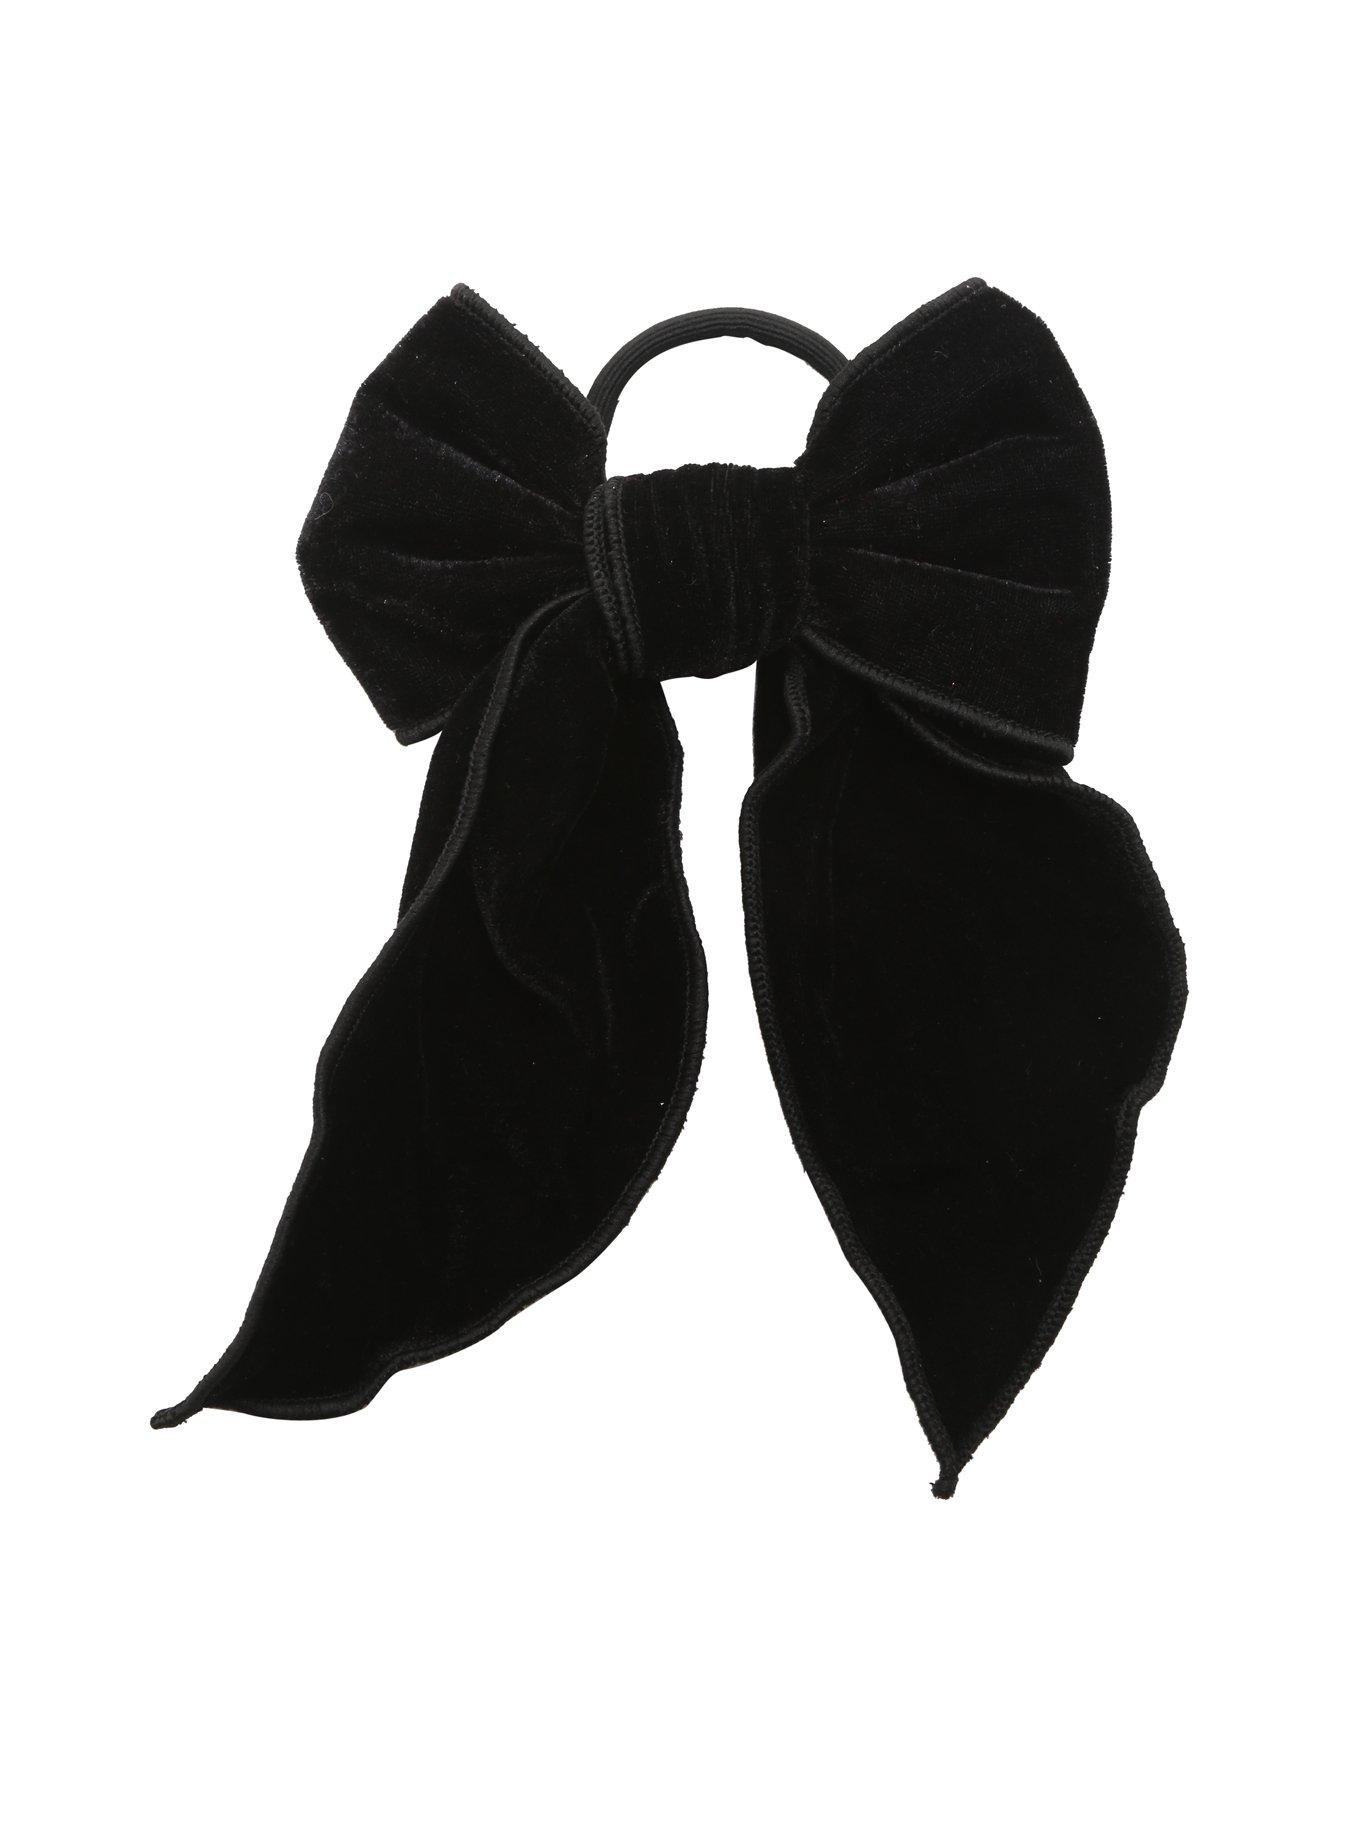 Blackheart Extra Large Black Velvet Bow Hair Tie, , alternate